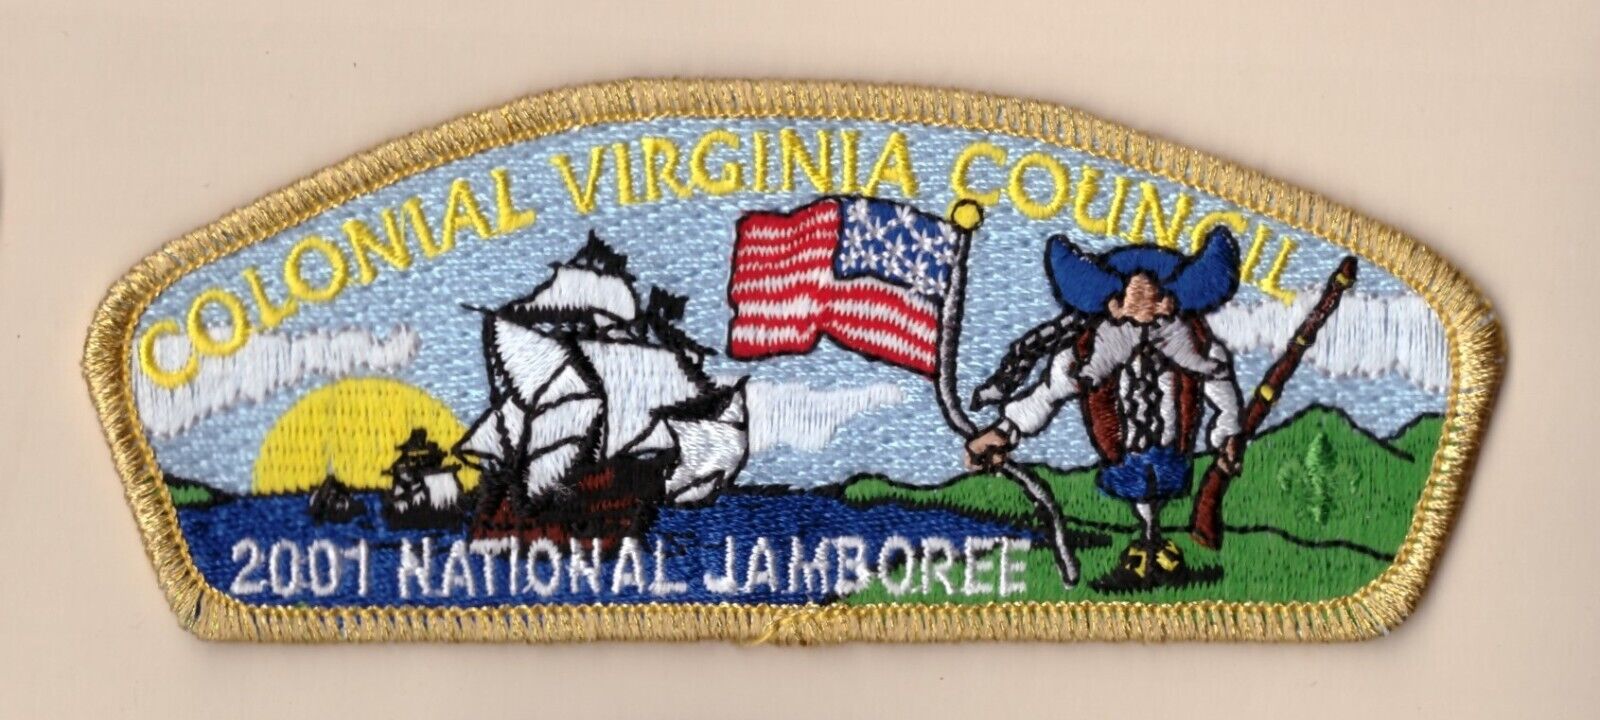 JSP 2001 -  Colonial Virginia Council - Mint - VA